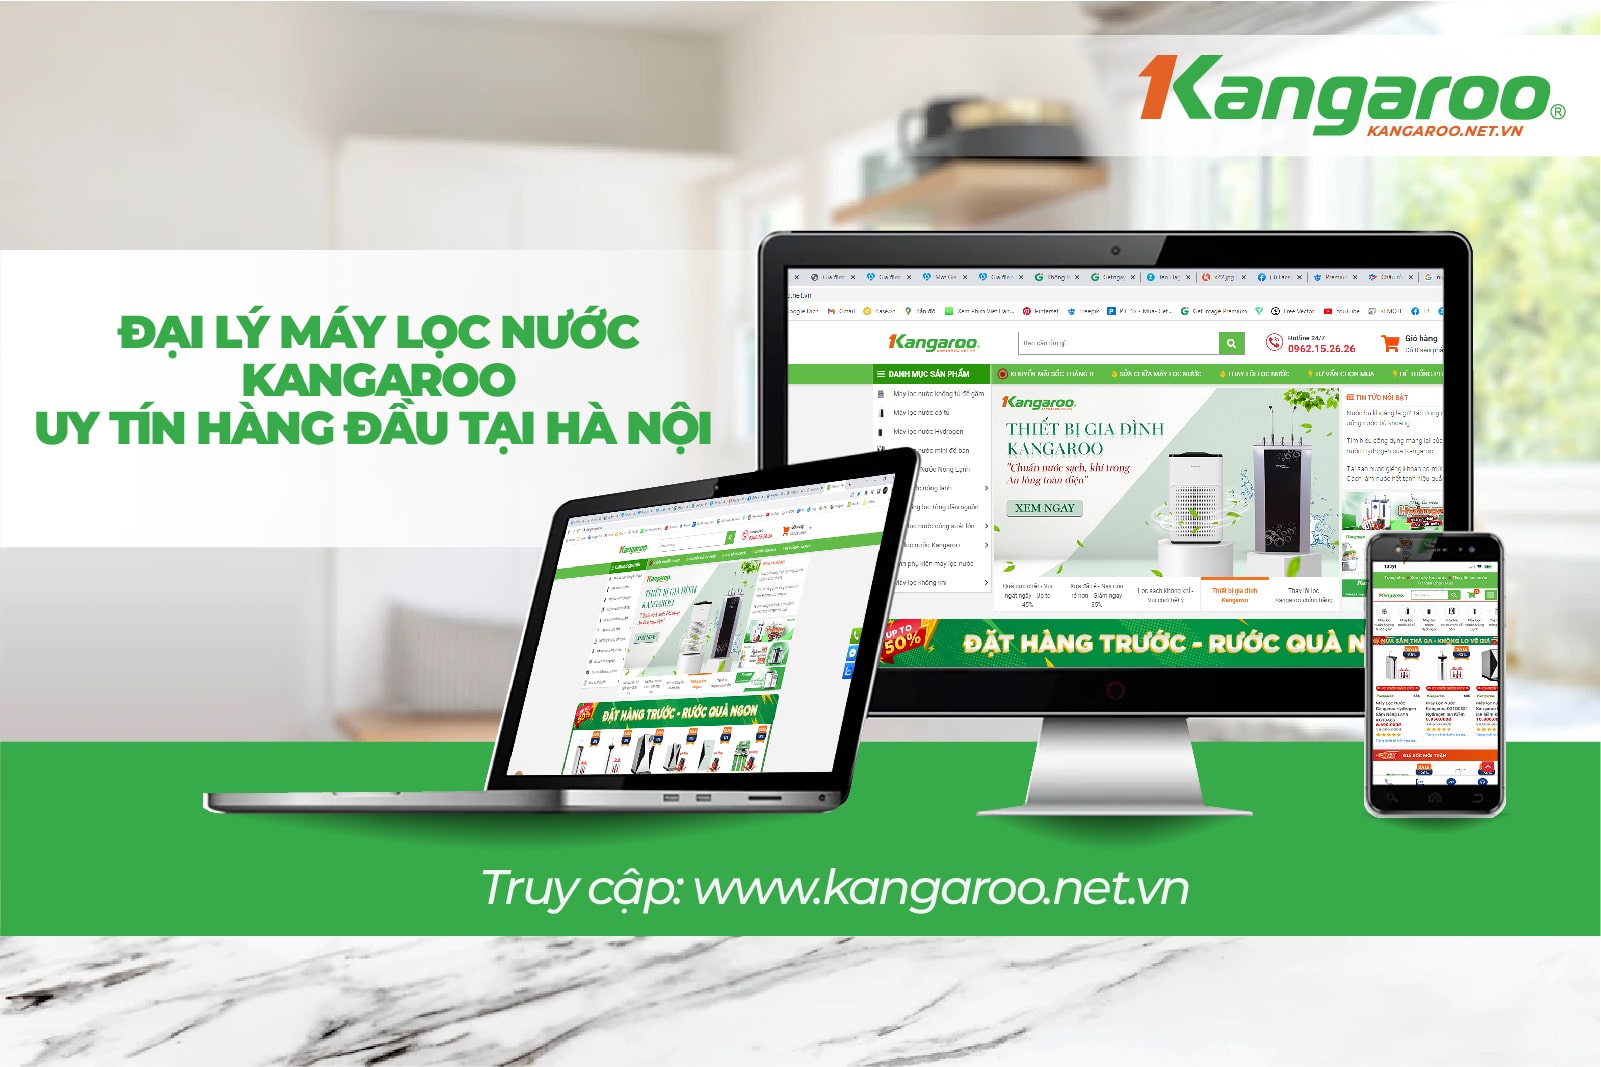 Kangaroo.net.vn là địa chỉ mua model KG100HU+ uy tín nhất hiện nay 